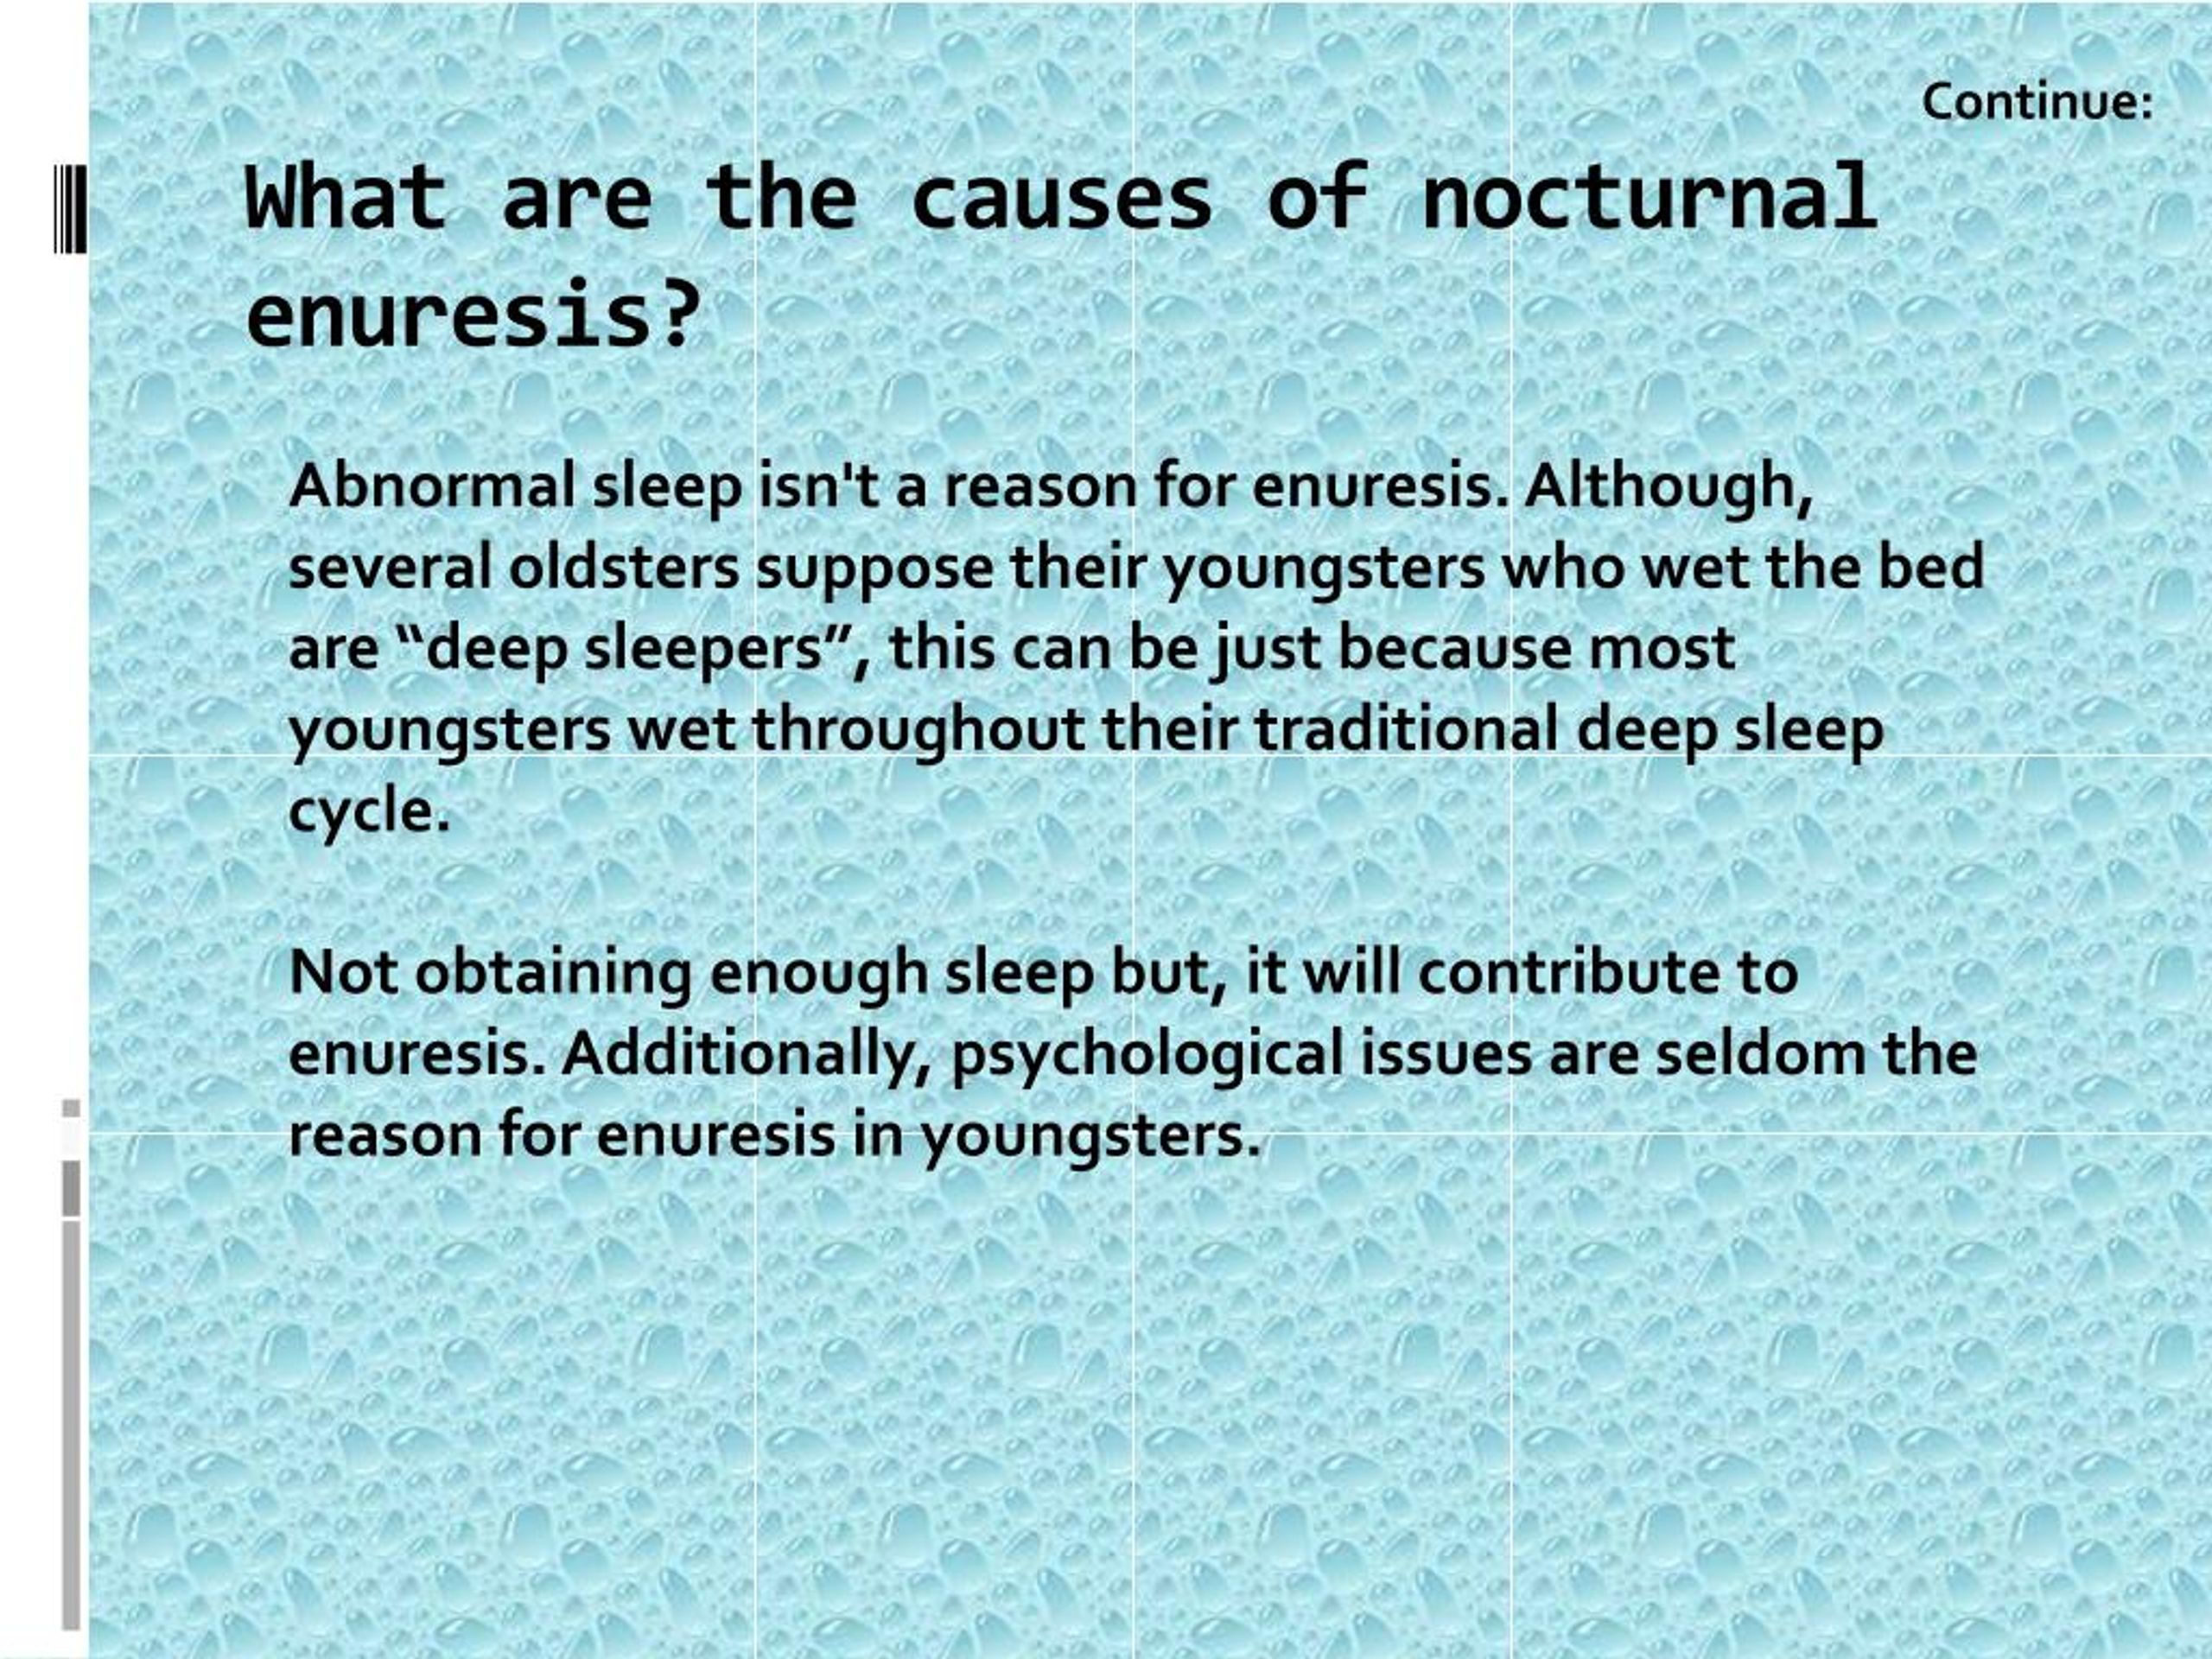 nocturnal enuresis in adults causes